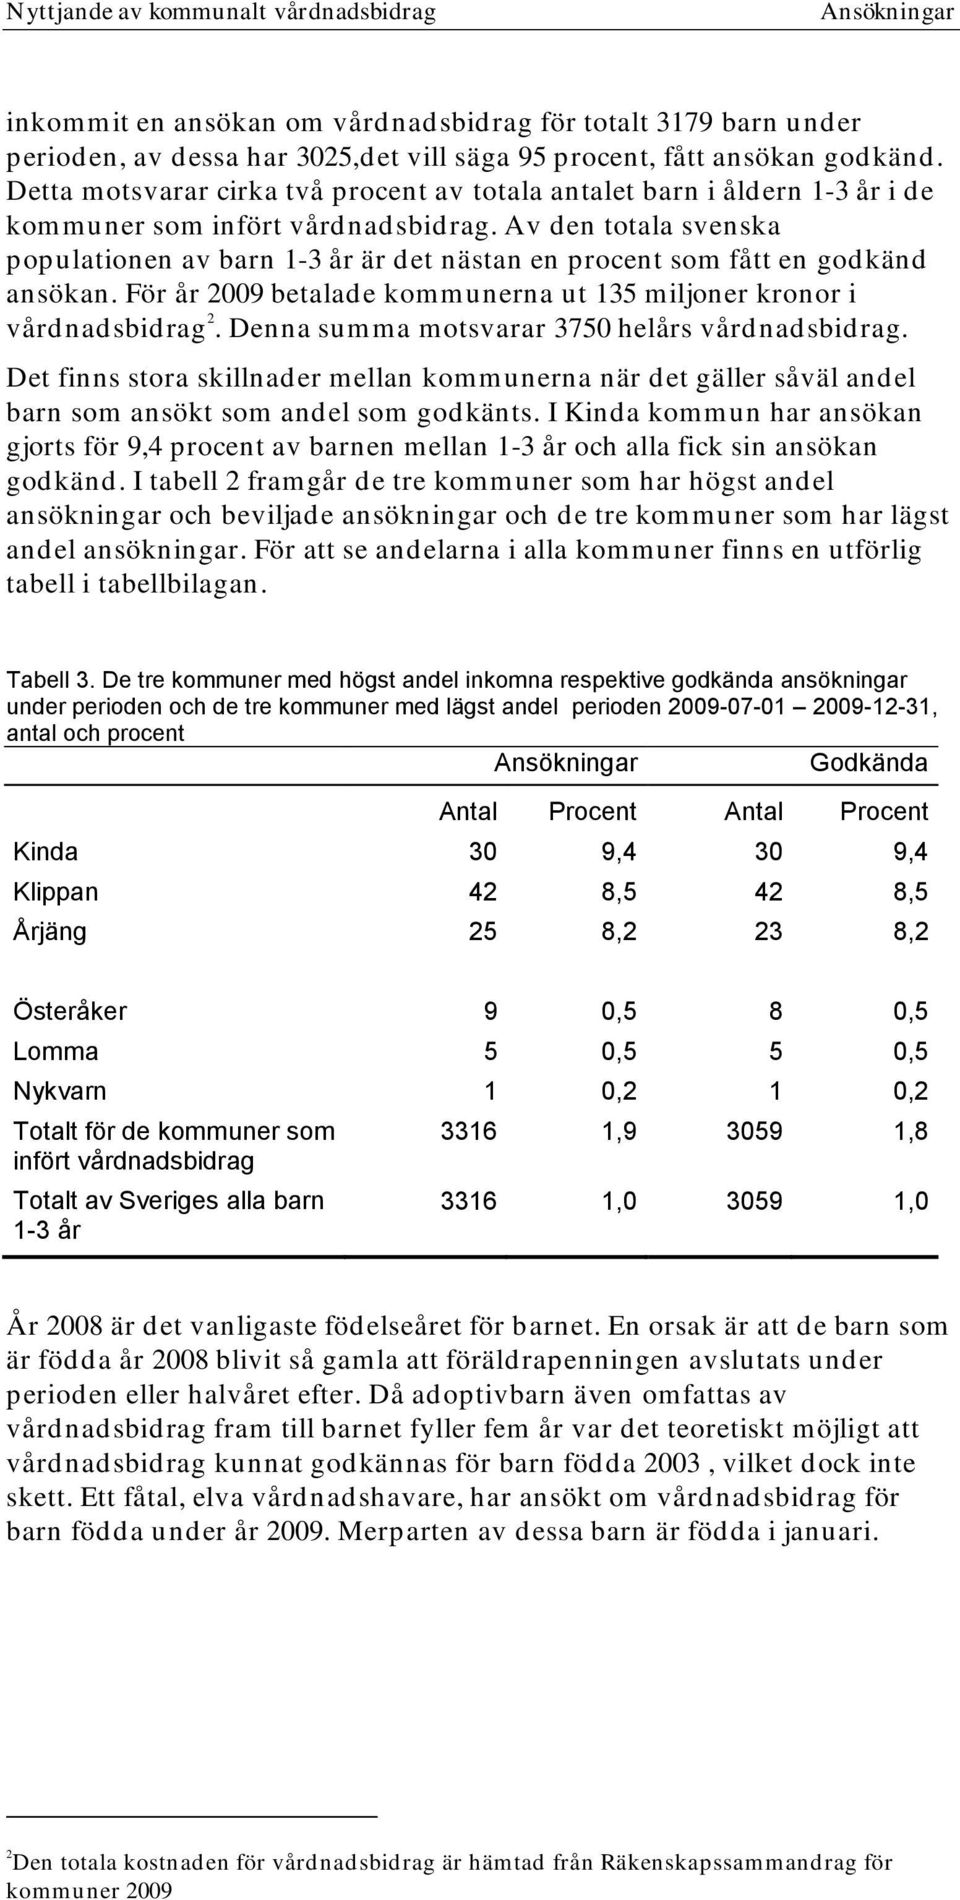 Av den totala svenska populationen av barn 1-3 år är det nästan en procent som fått en godkänd ansökan. För år 2009 betalade kommunerna ut 135 miljoner kronor i vårdnadsbidrag 2.